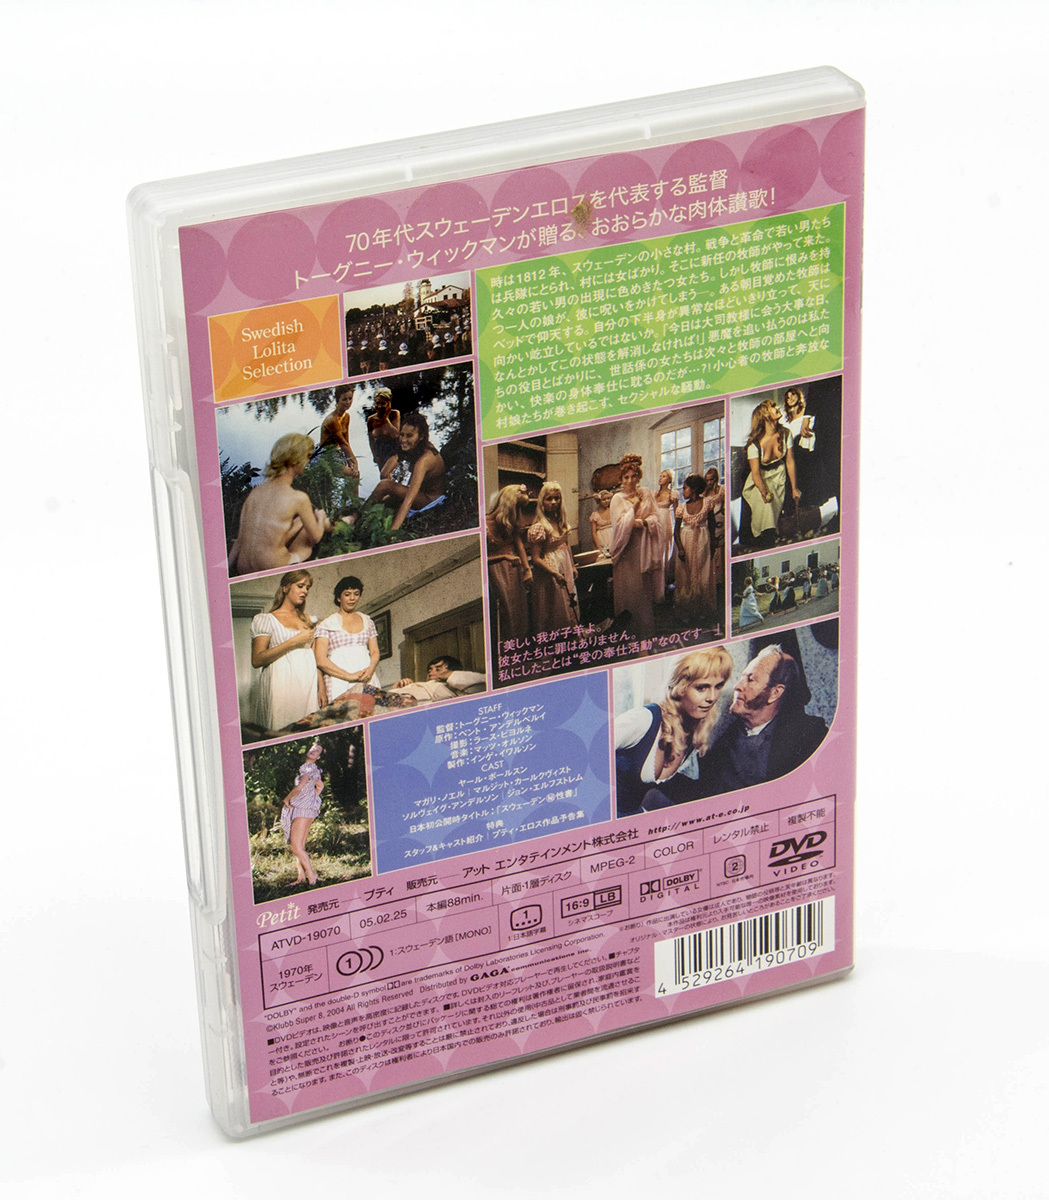 スウェーデン・ラブ・バイブル as 愛の聖書 ヘア無修正版 THE LUSTFUL VICAR DVD 中古 セル版 エロス_画像2